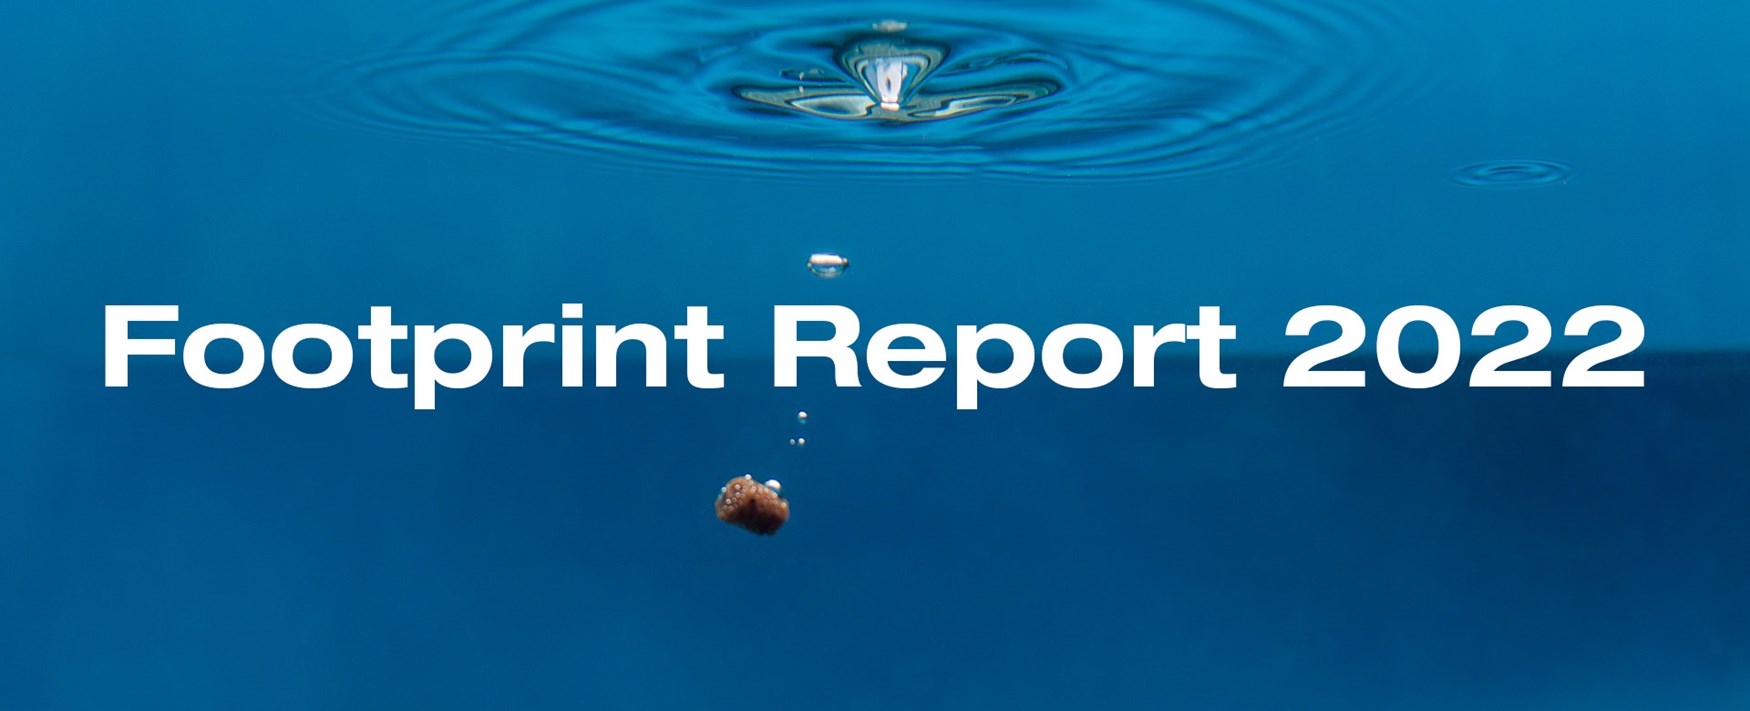 Footprint report 2022 Skretting Norway